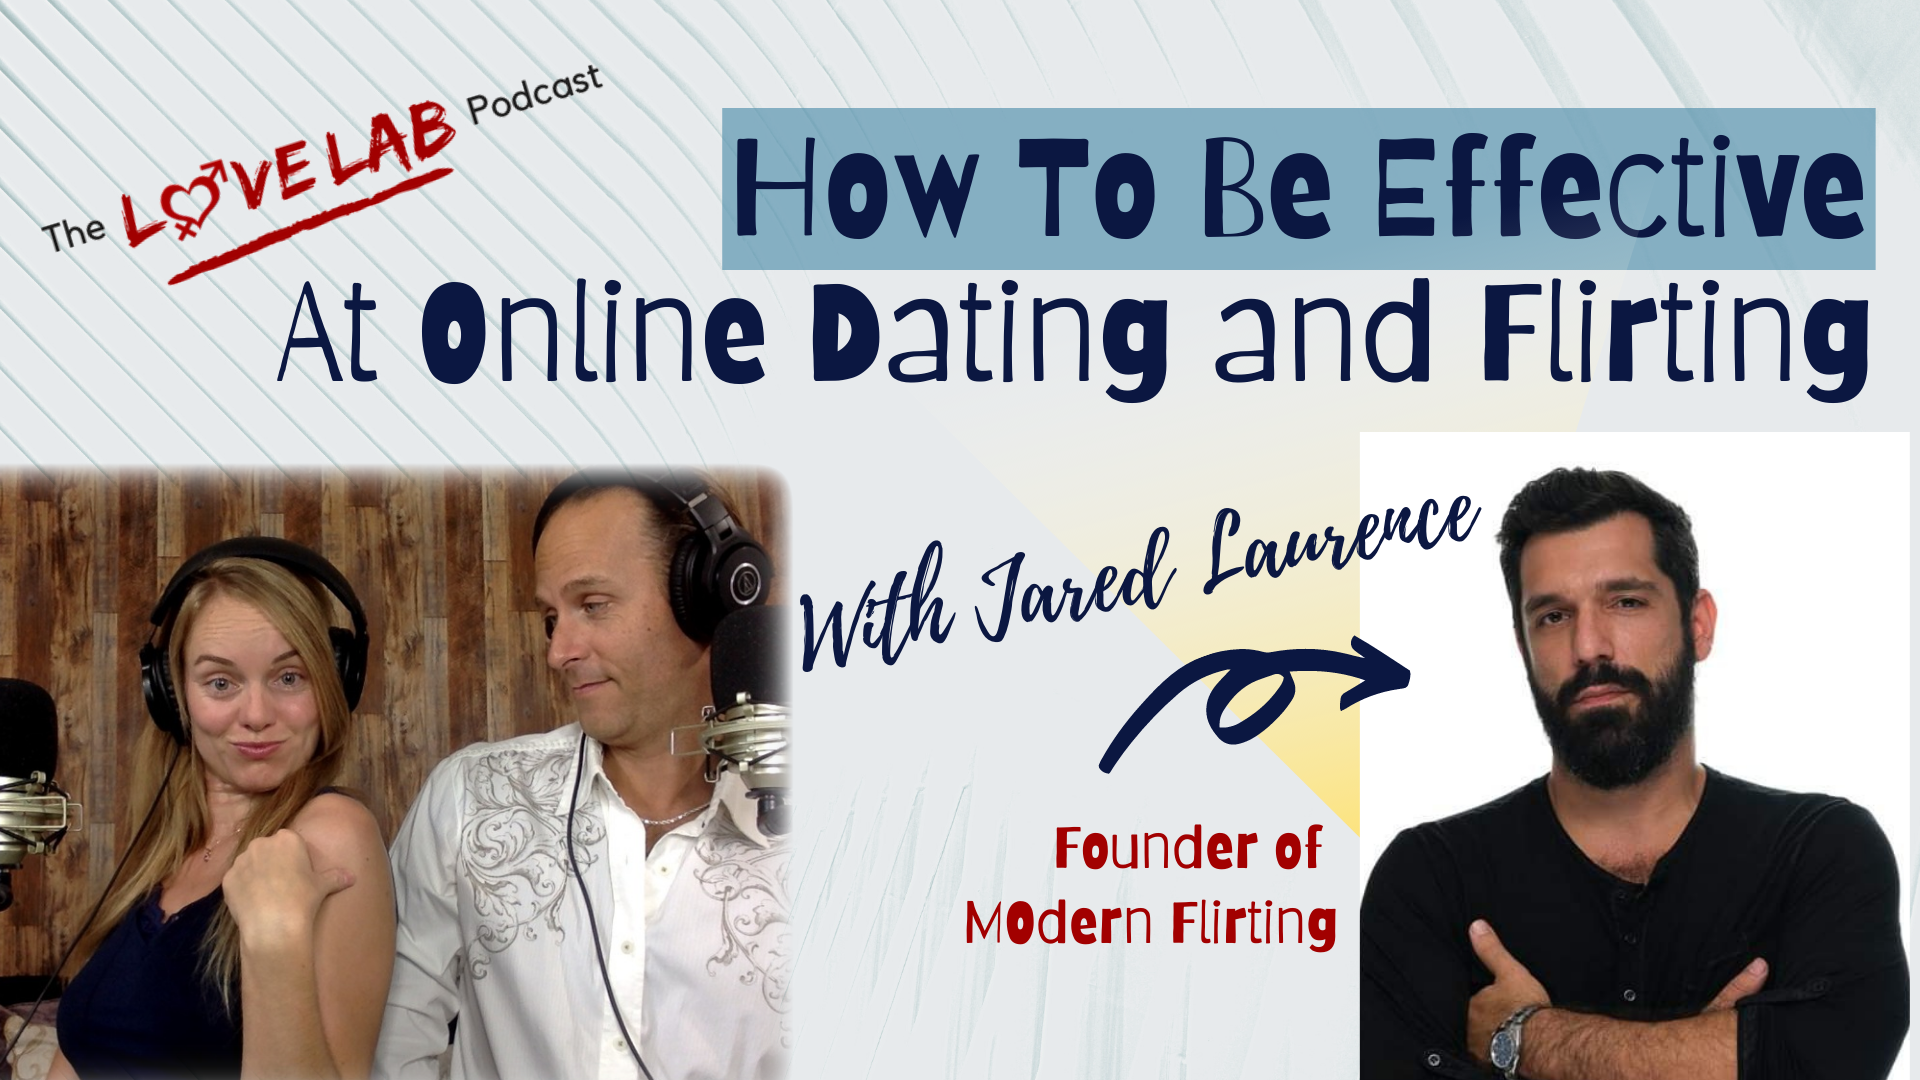 In dating flirting online Online Flirting